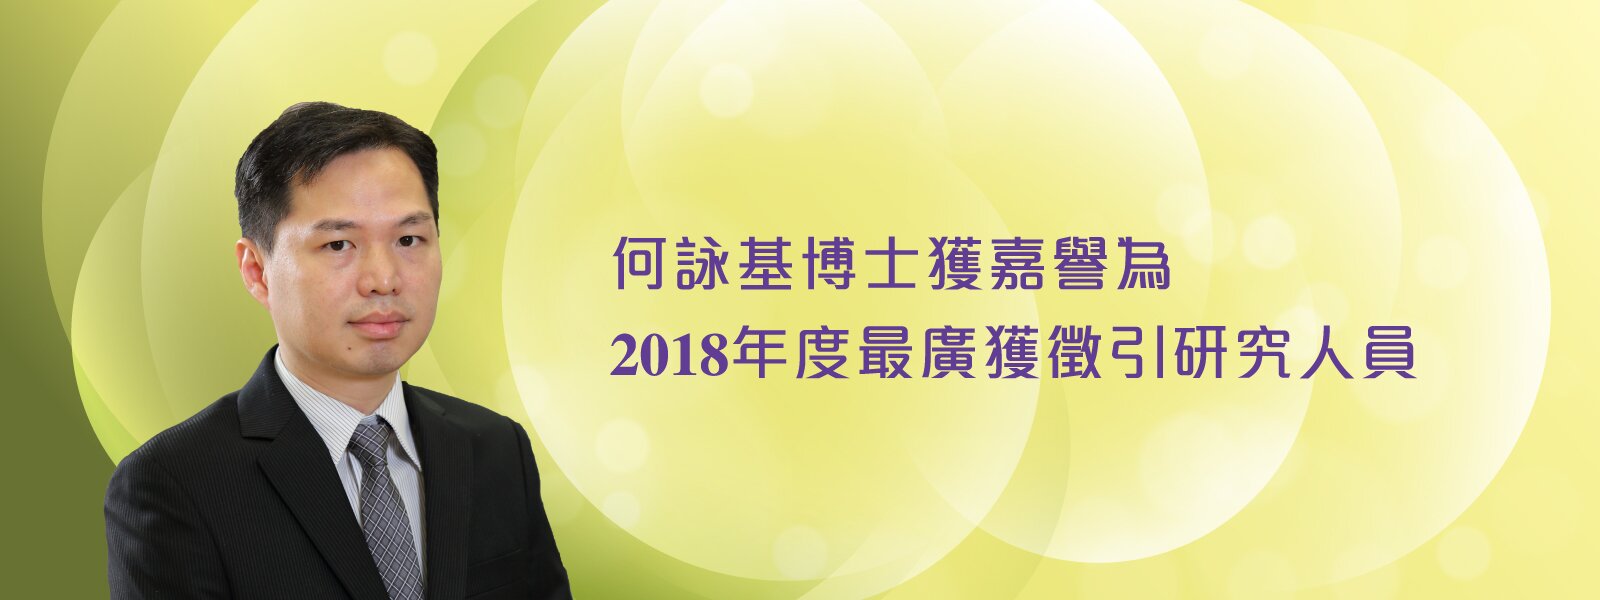 何詠基博士獲嘉譽為2018年度最廣獲徵引研究人員